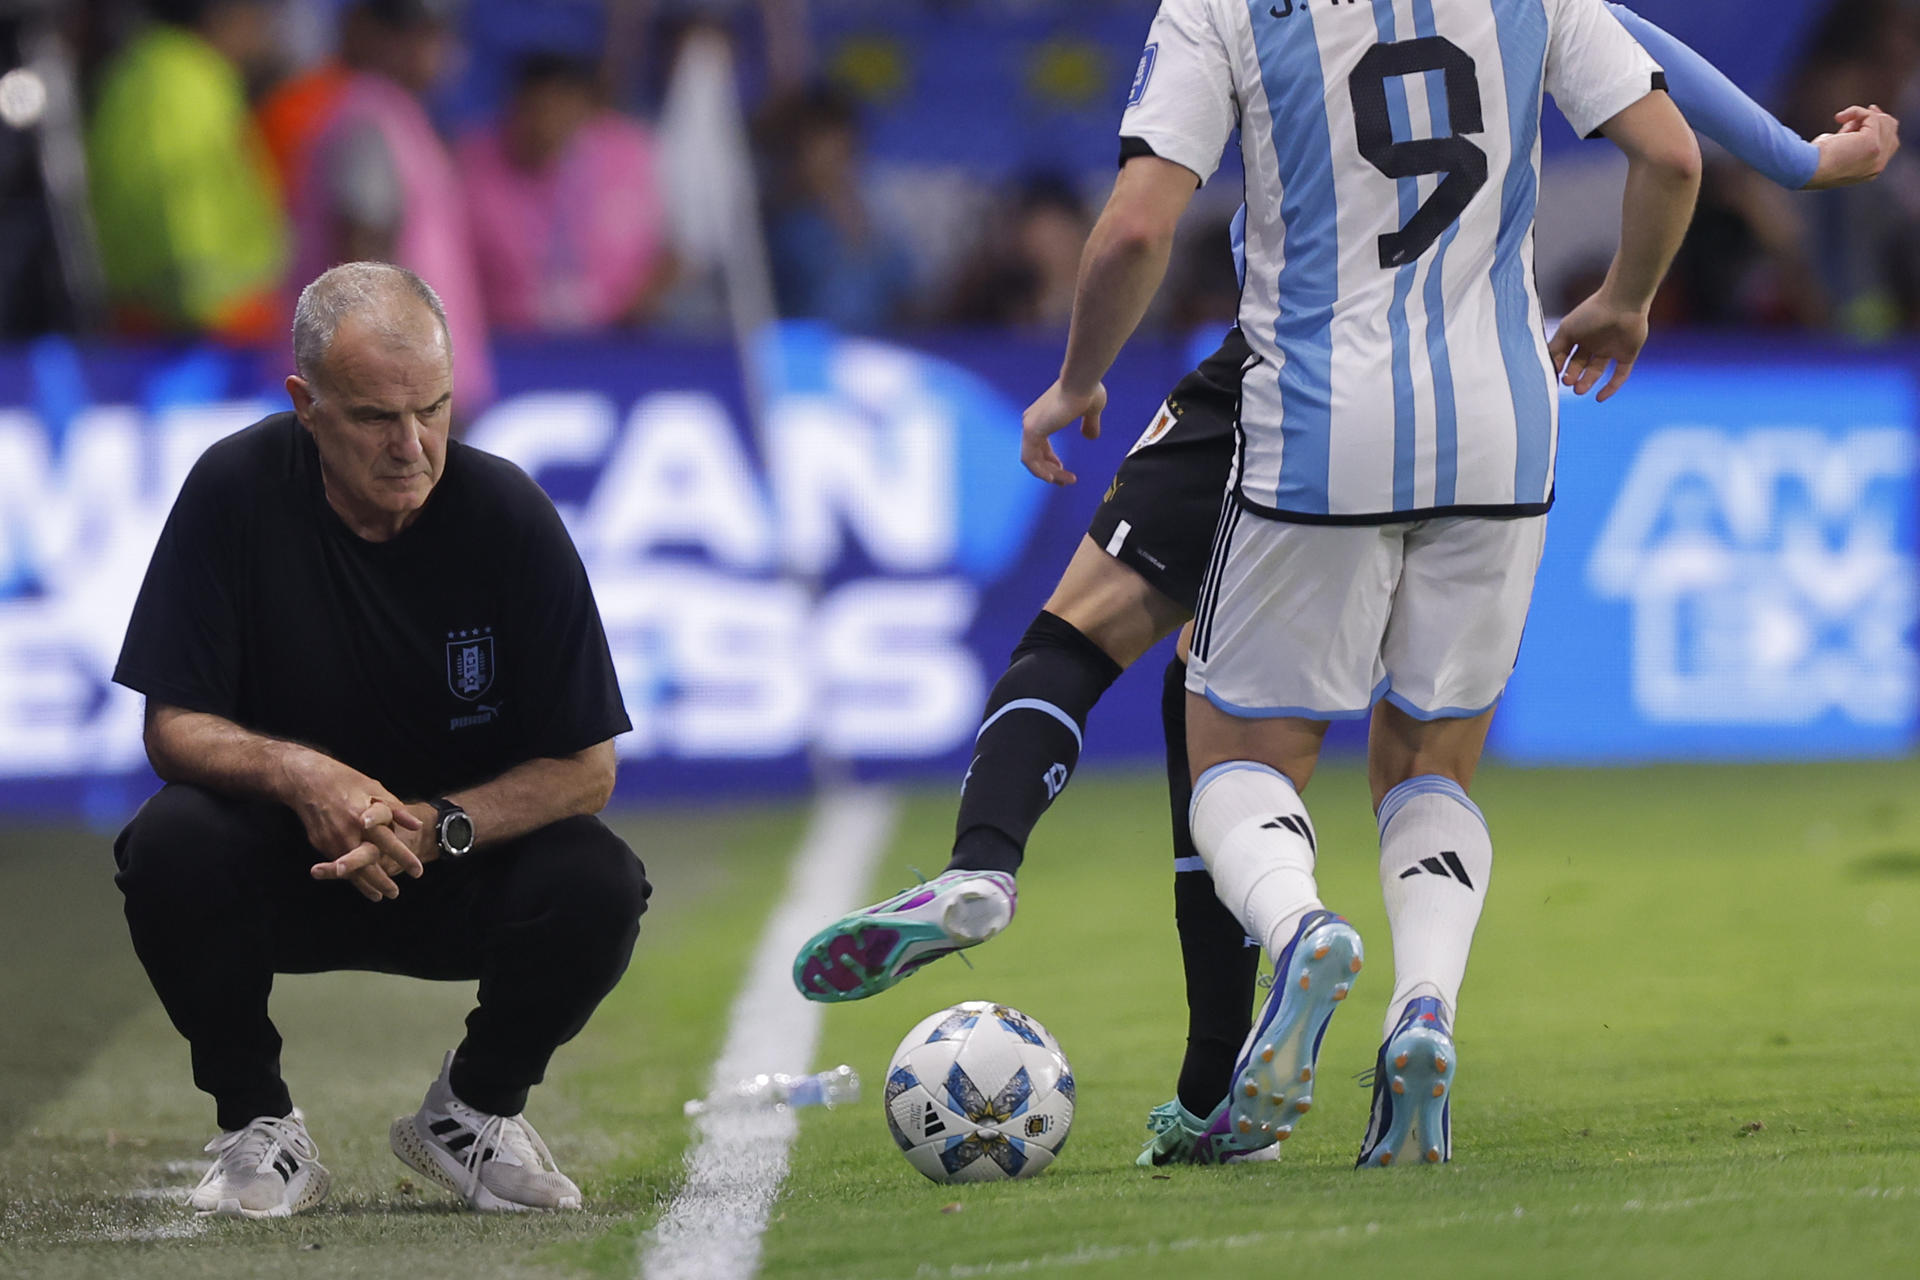 El jugador de Uruguay que no vió minutos en el Mundial y hoy es una pieza  clave para Bielsa